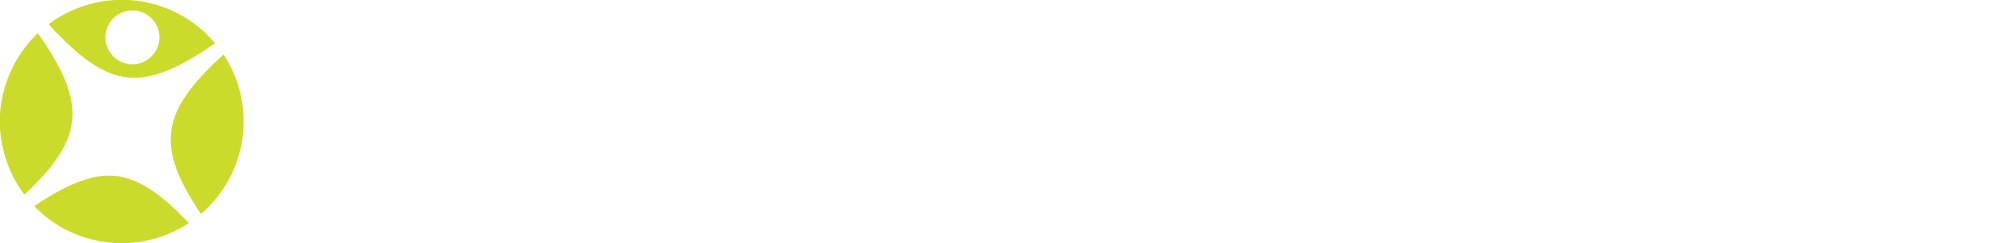 Scorevision logo fill overdarkbg